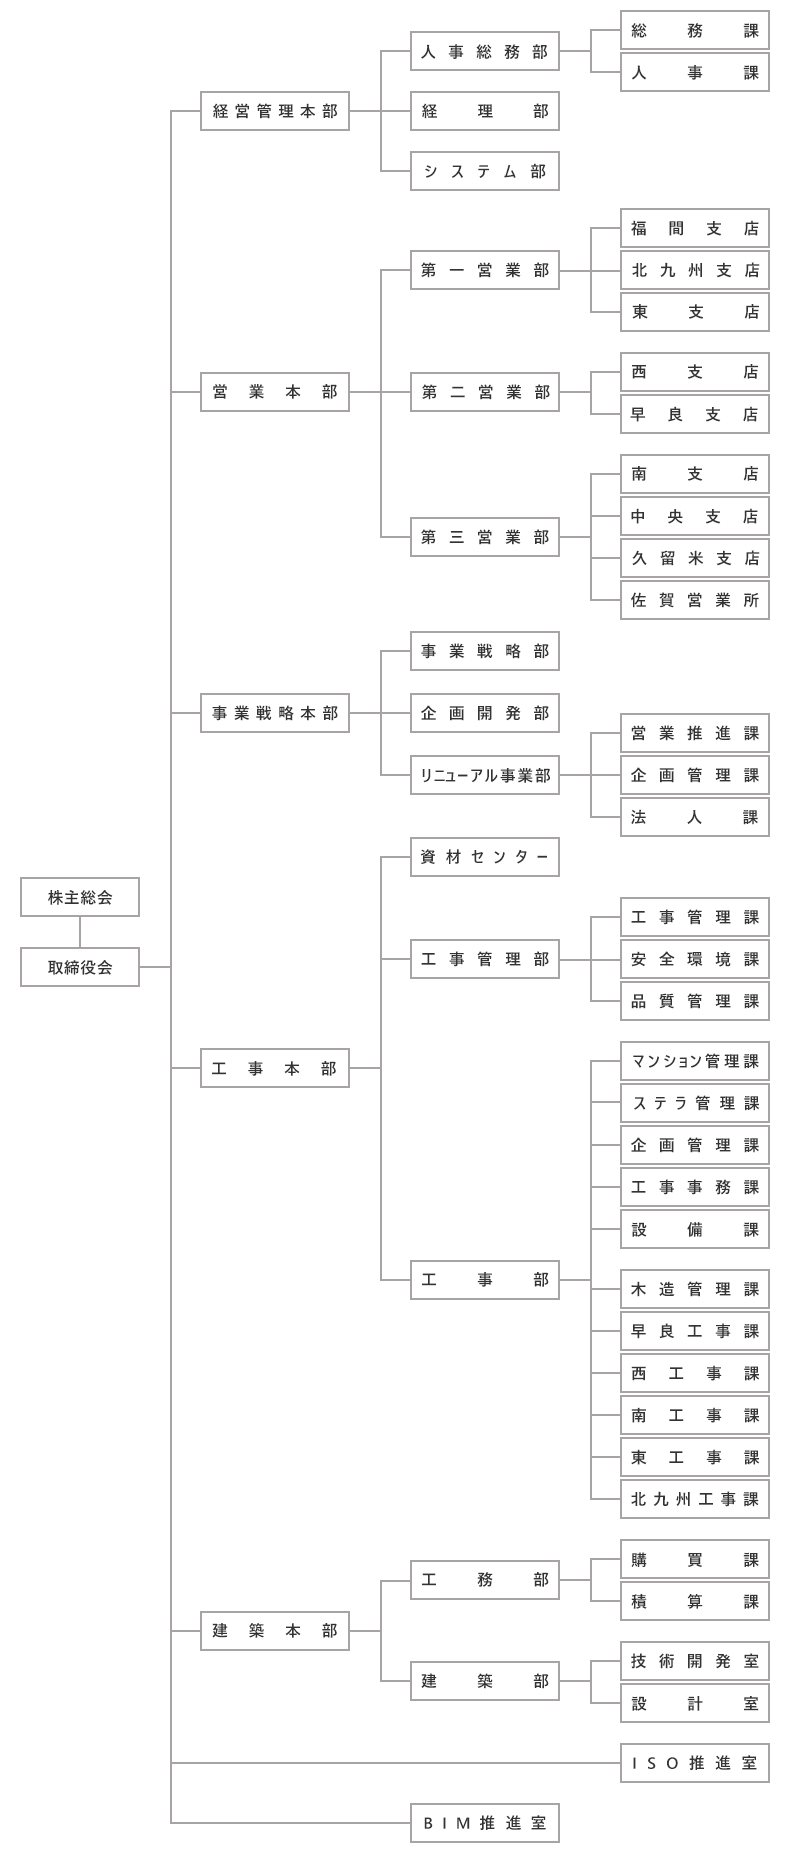 上村建設組織図